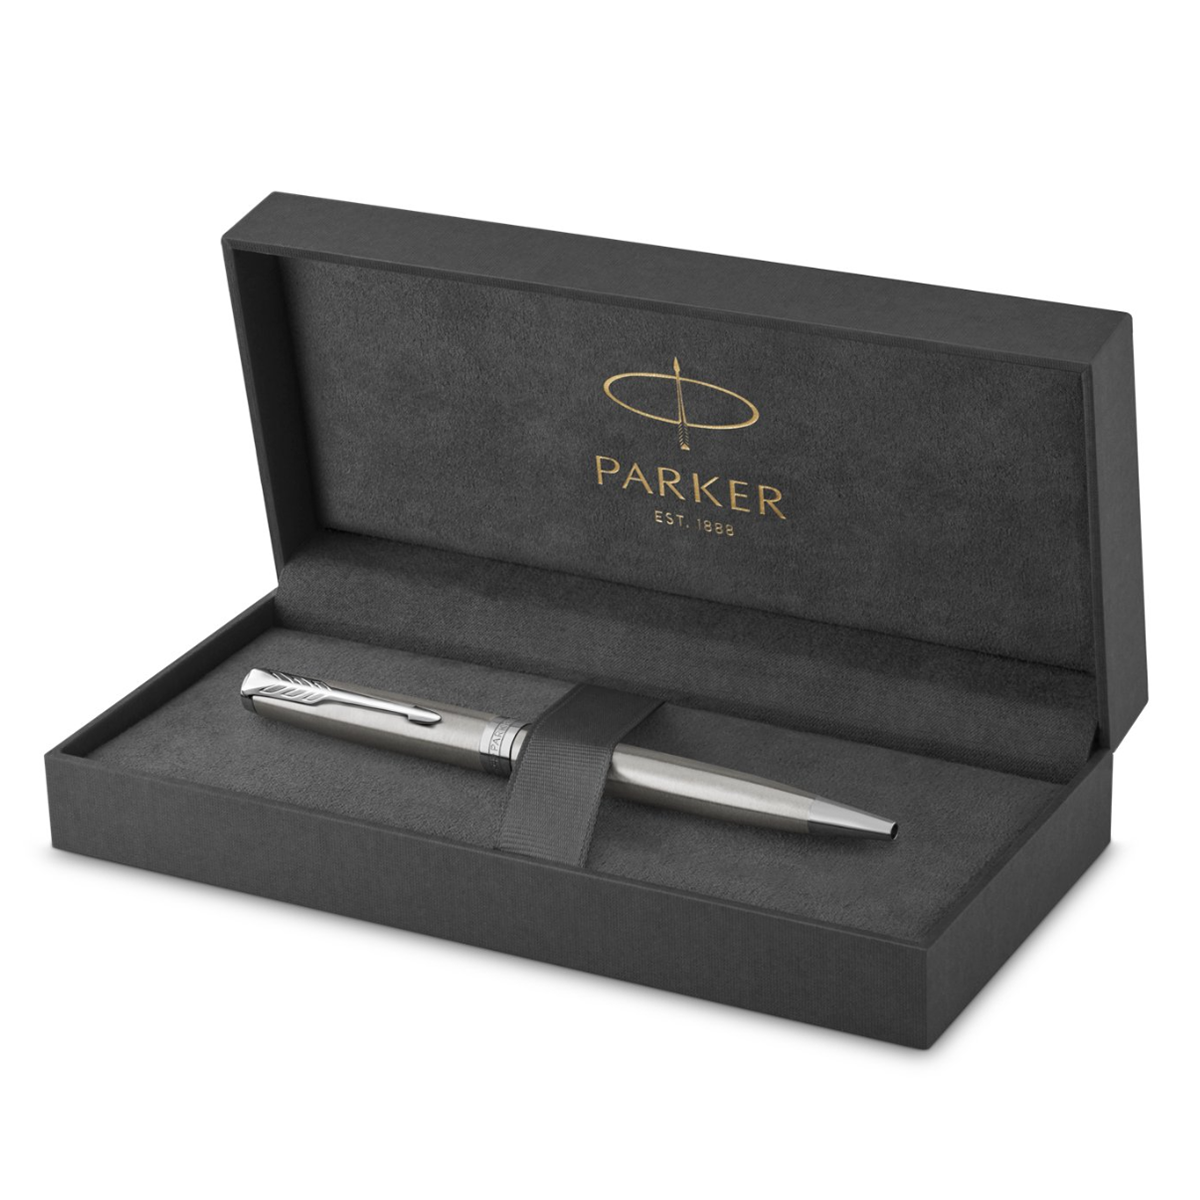 Sonnet Steel/Chrome Ballpoint in the group Pens / Fine Writing / Ballpoint Pens at Pen Store (104698)